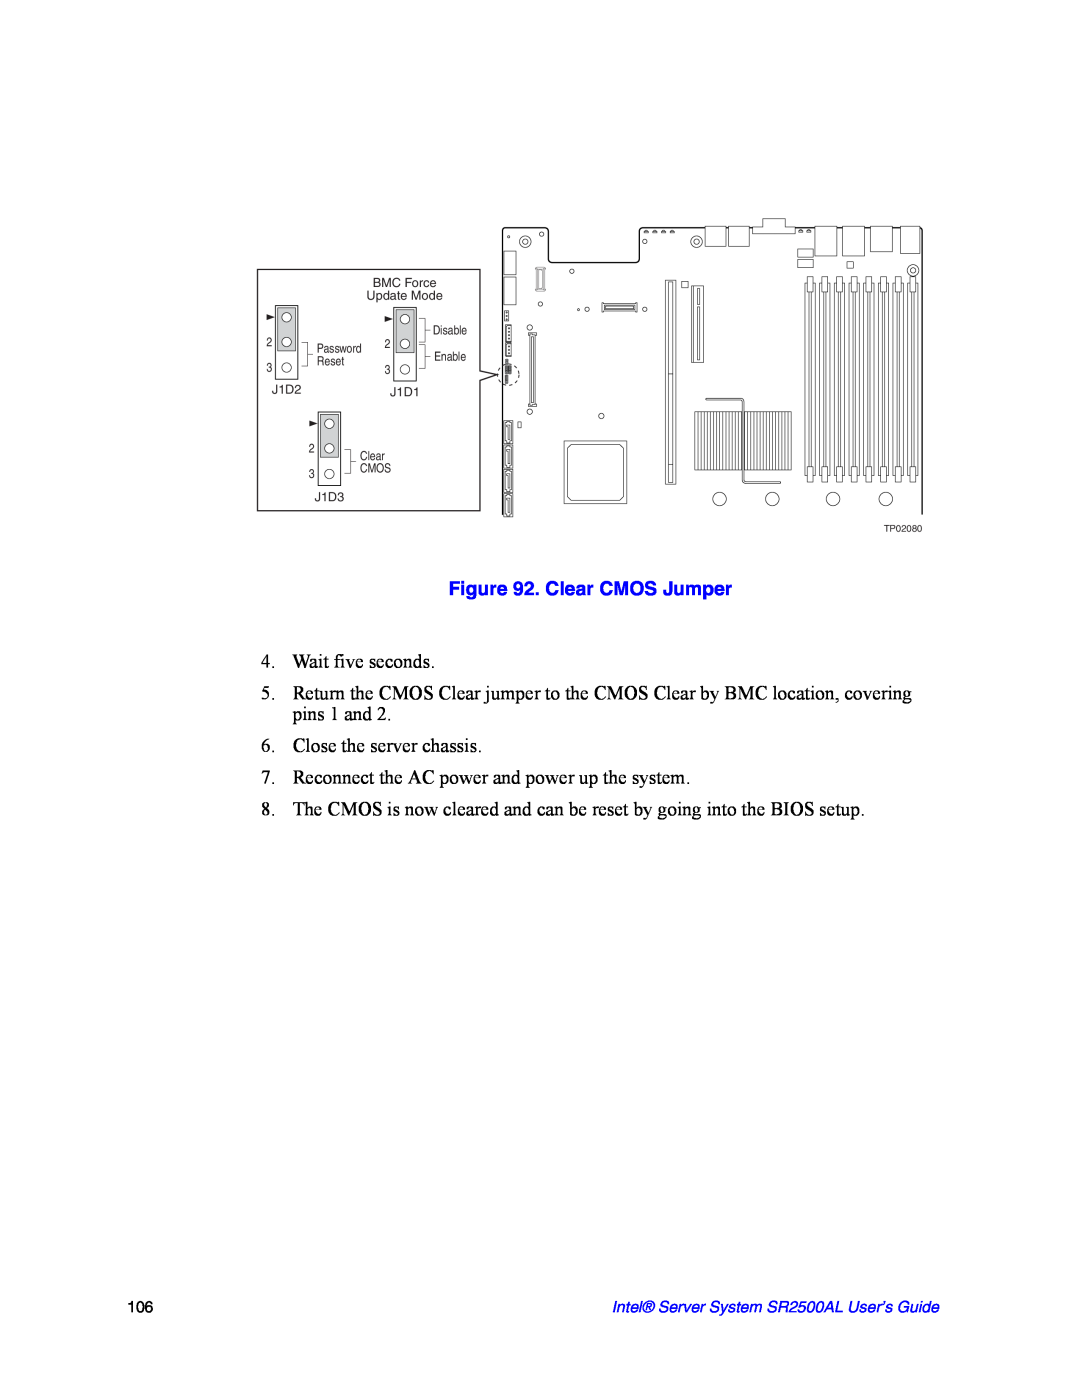 Intel SR2500AL manual Clear CMOS Jumper 